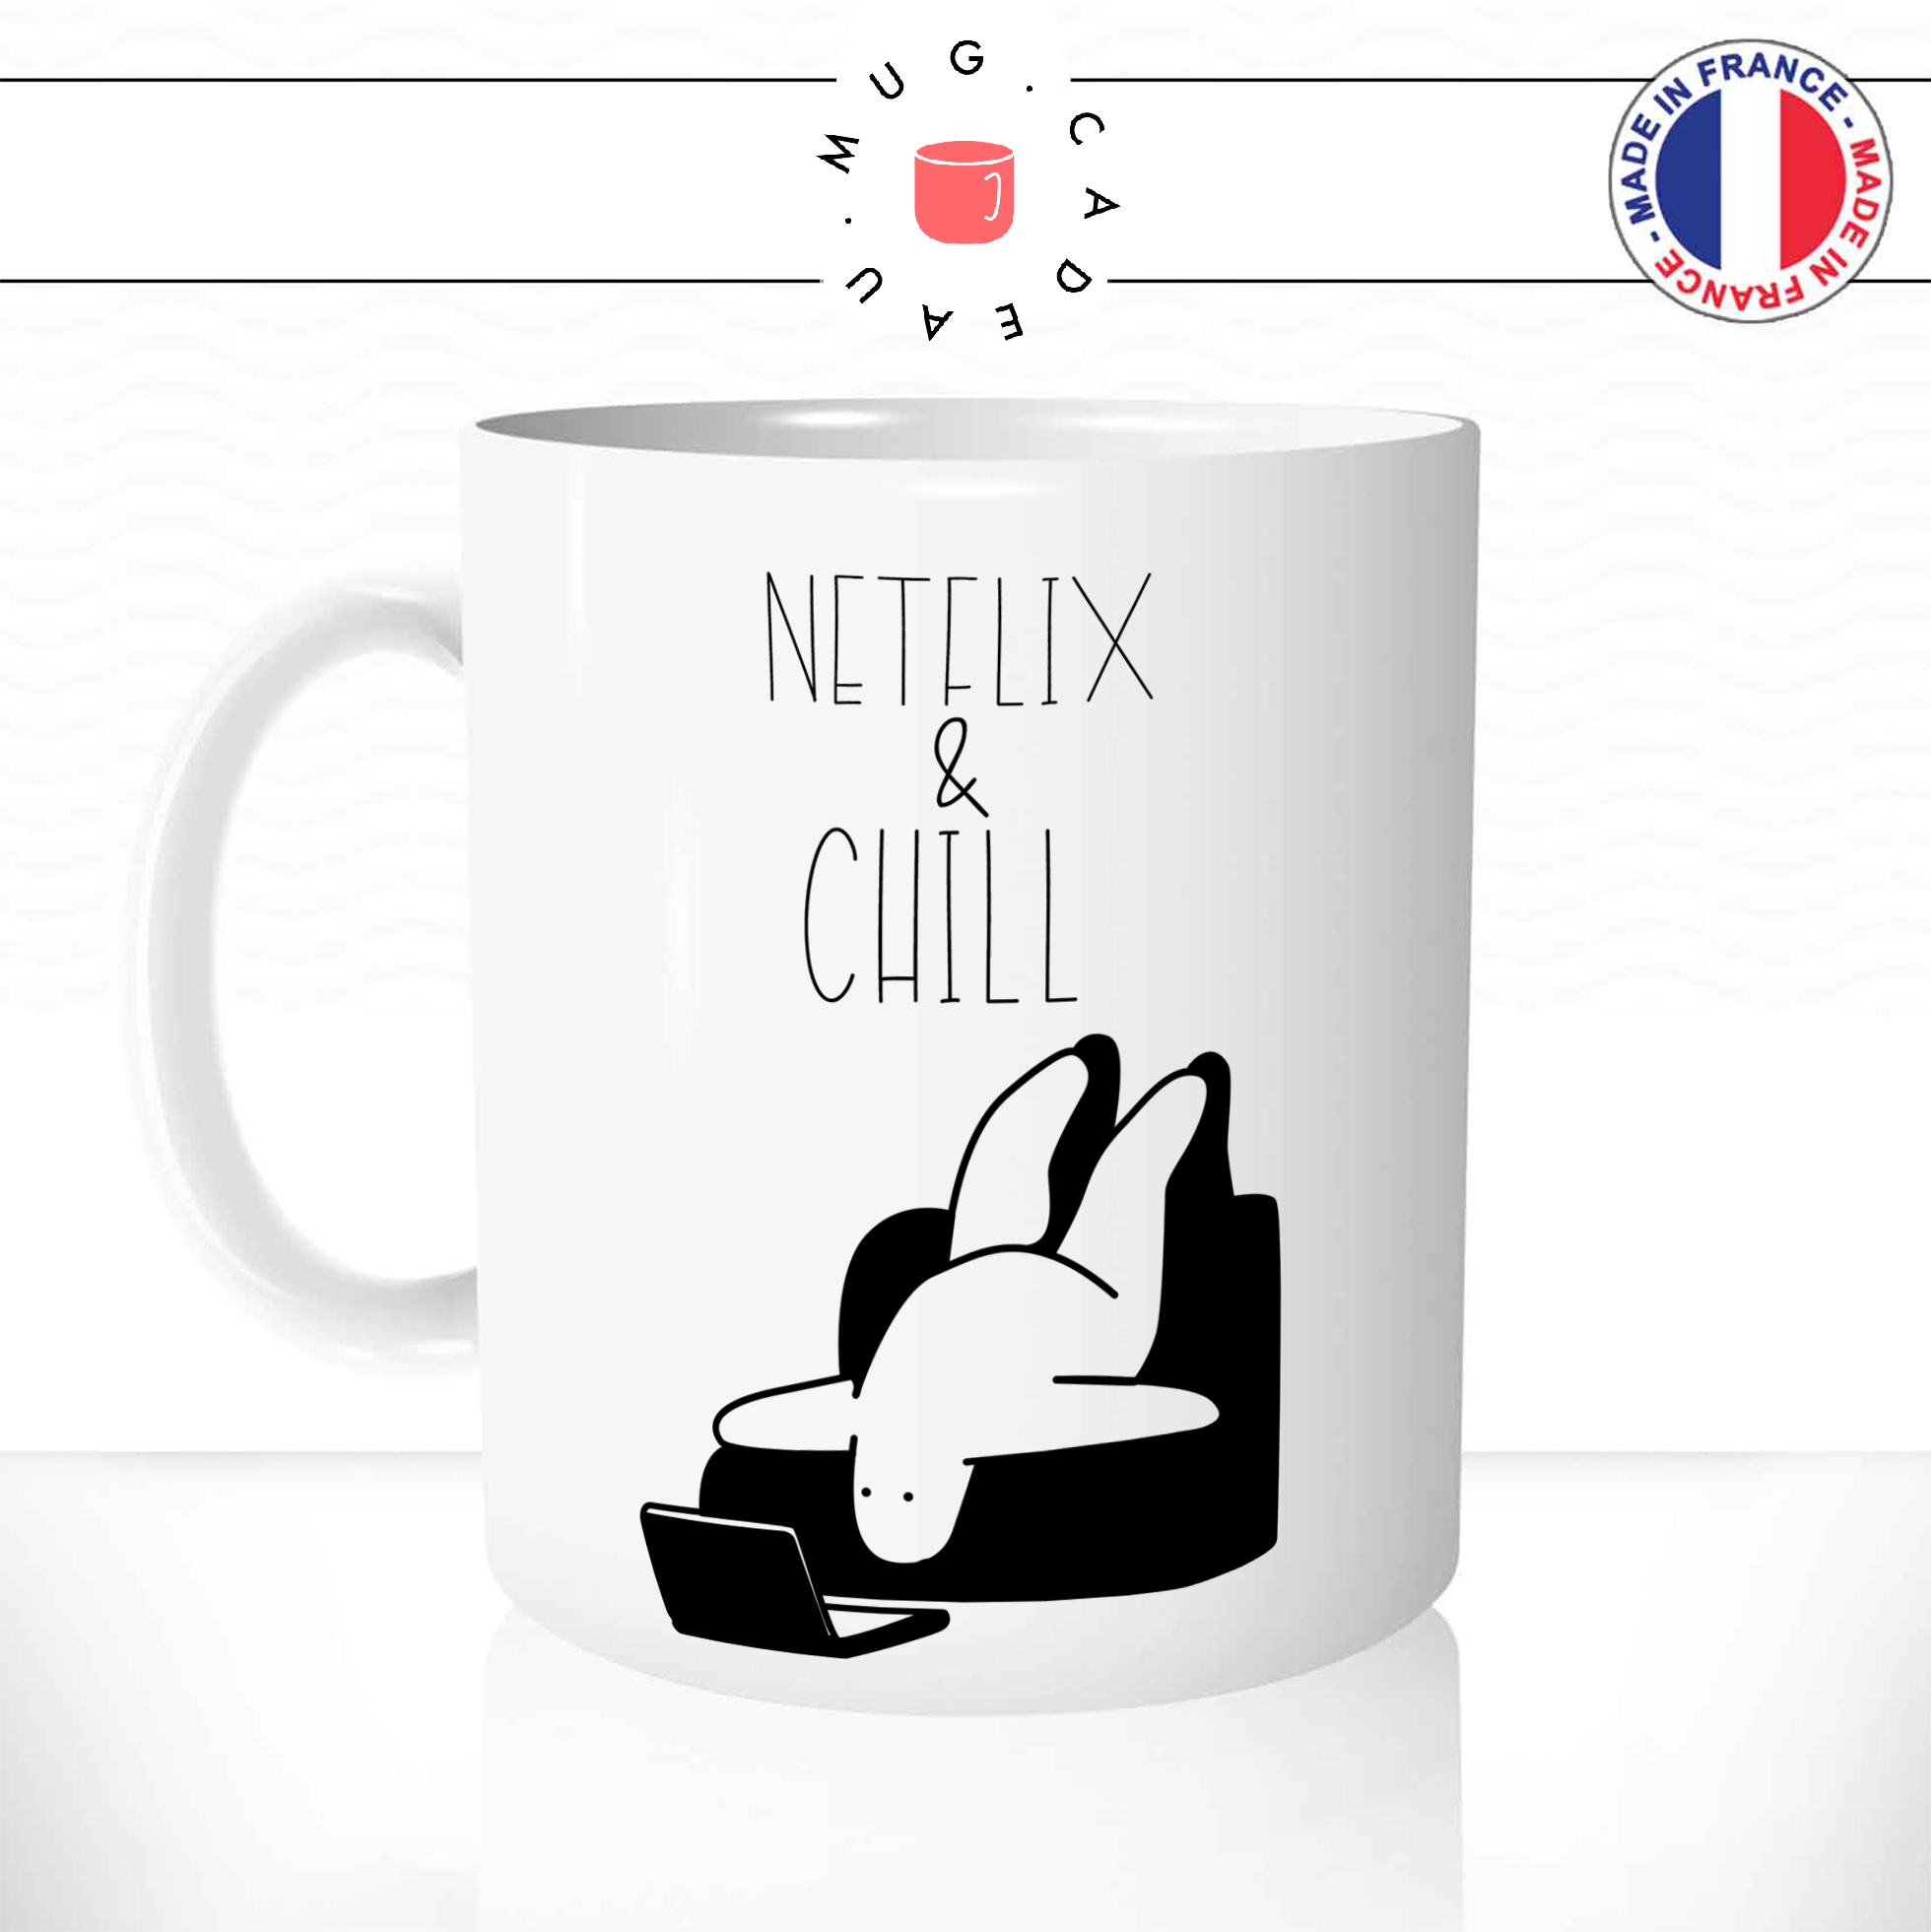 Mug Netflix And Chill